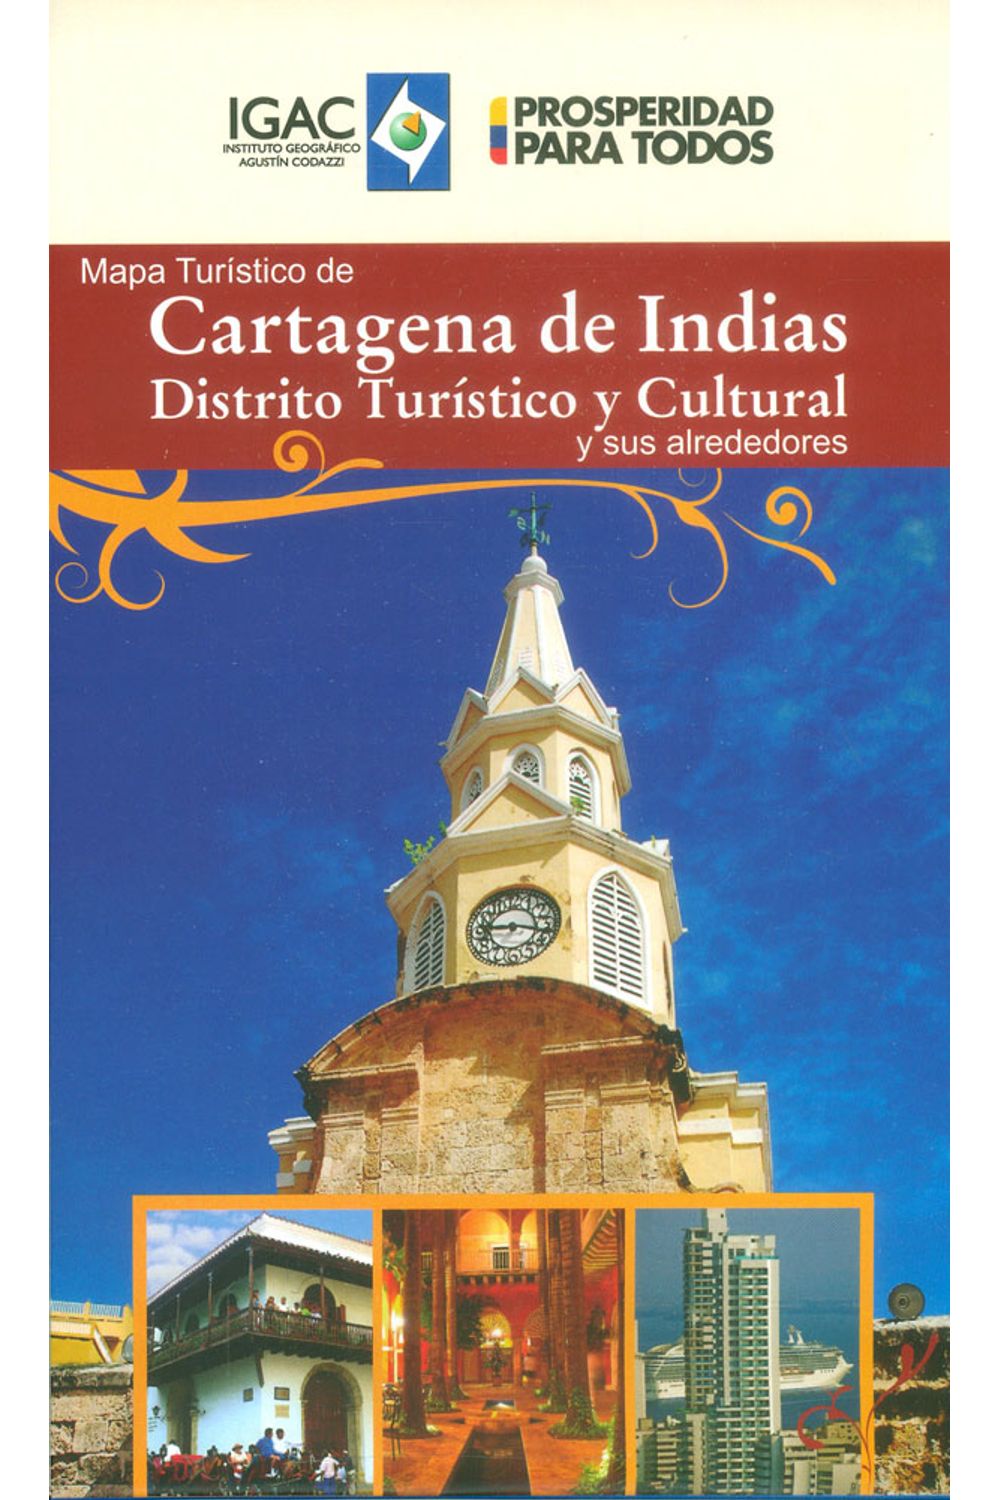 mapa-turistico-de-cartagena-de-indias-distrito-turistico-7703746002570-igac